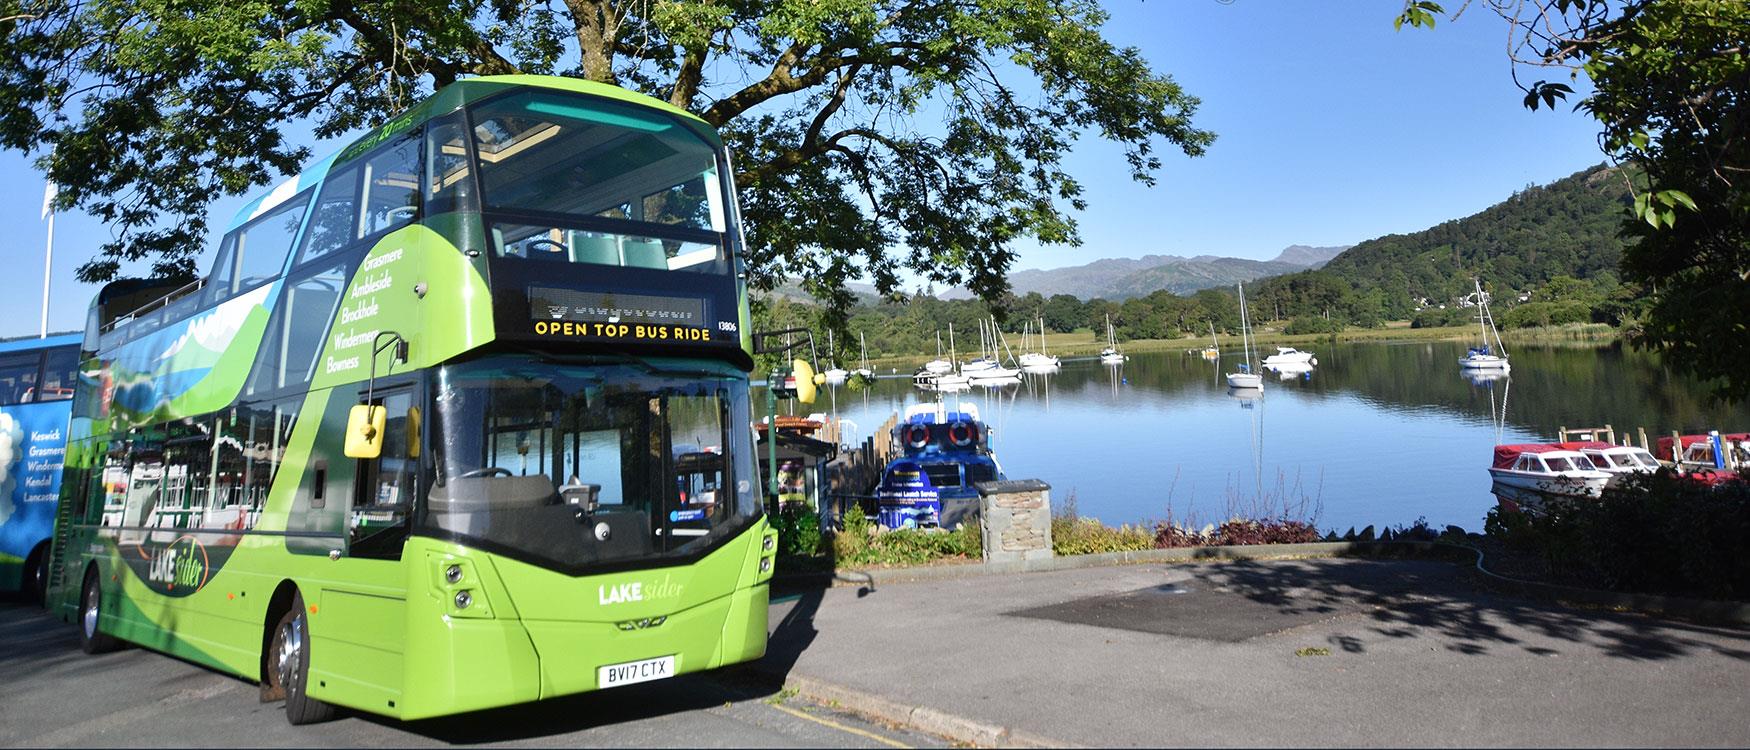 lake district mini bus tours